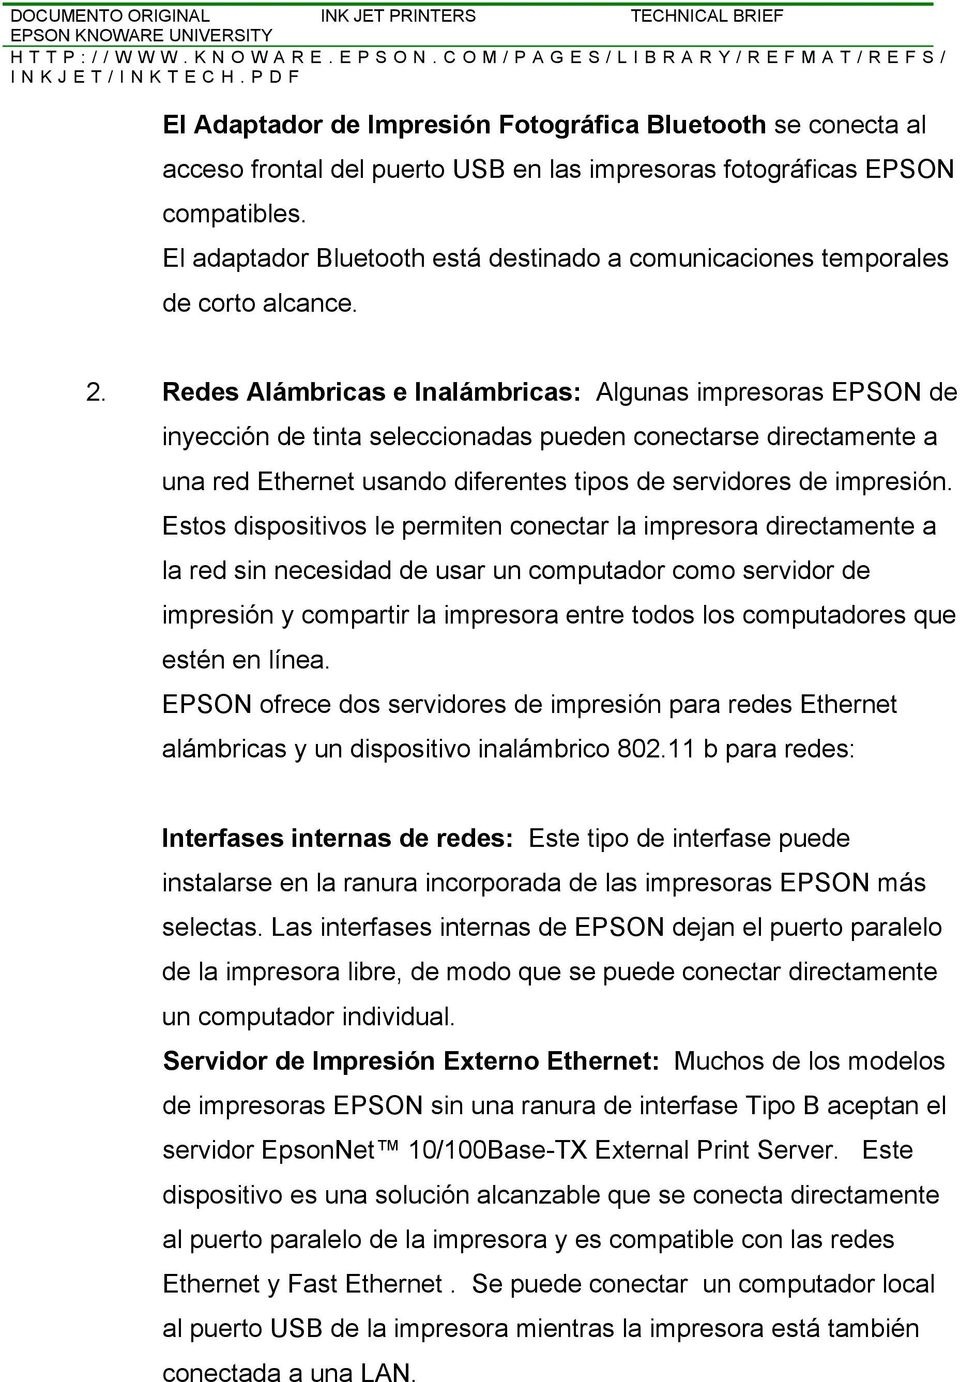 Redes Alámbricas e Inalámbricas: Algunas impresoras EPSON de inyección de tinta seleccionadas pueden conectarse directamente a una red Ethernet usando diferentes tipos de servidores de impresión.